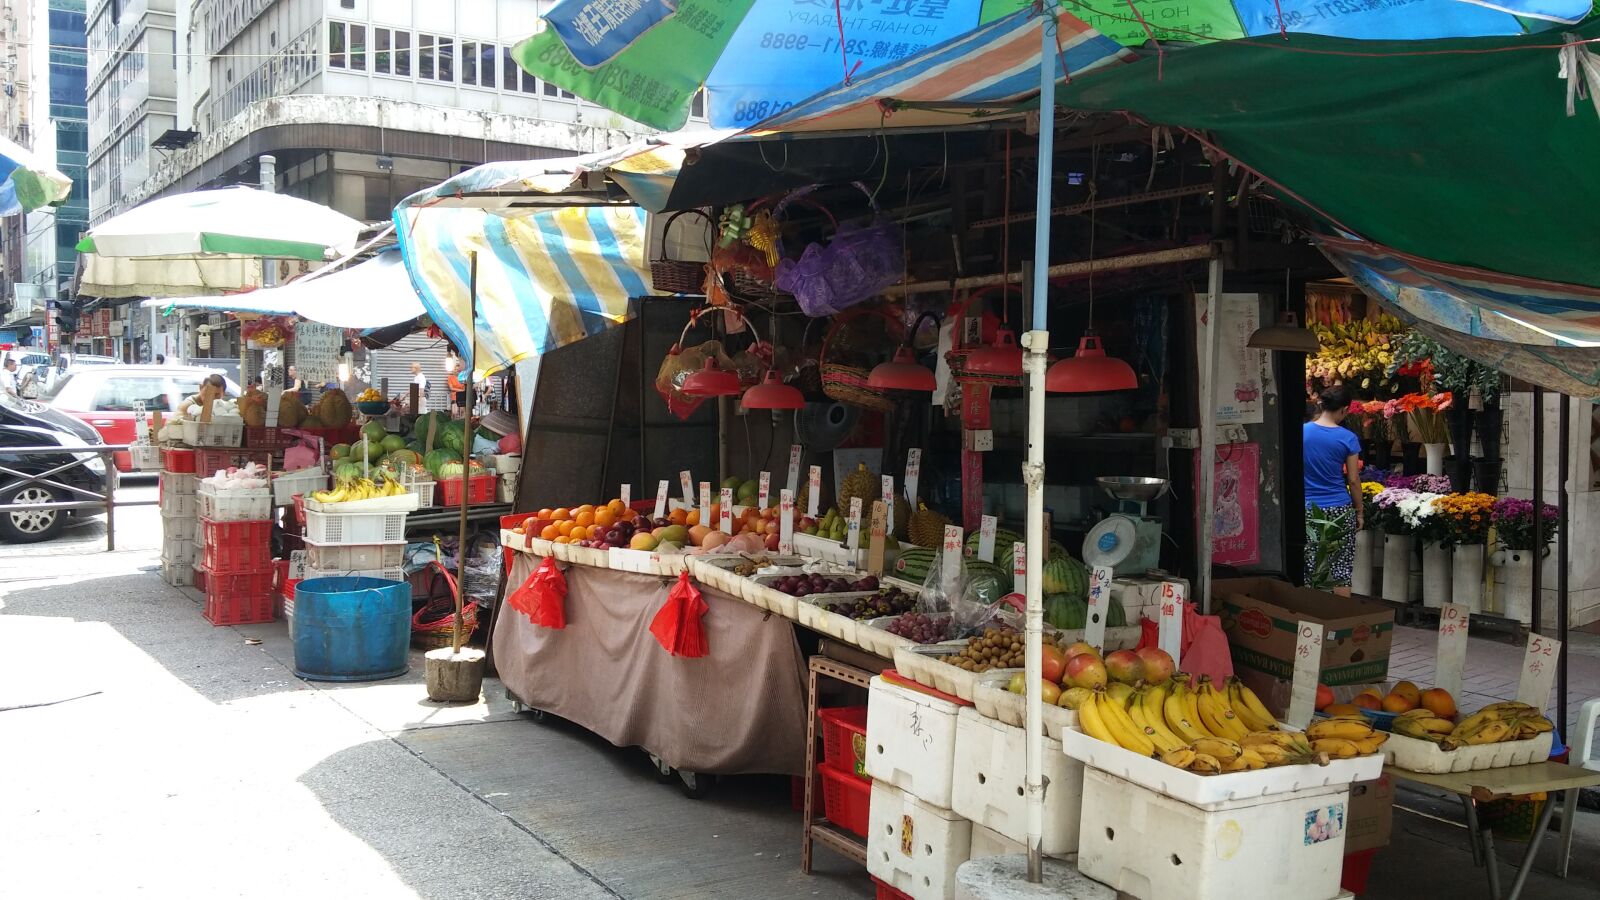 LG G Pro2 sample photo. Street stall, hong kong photography